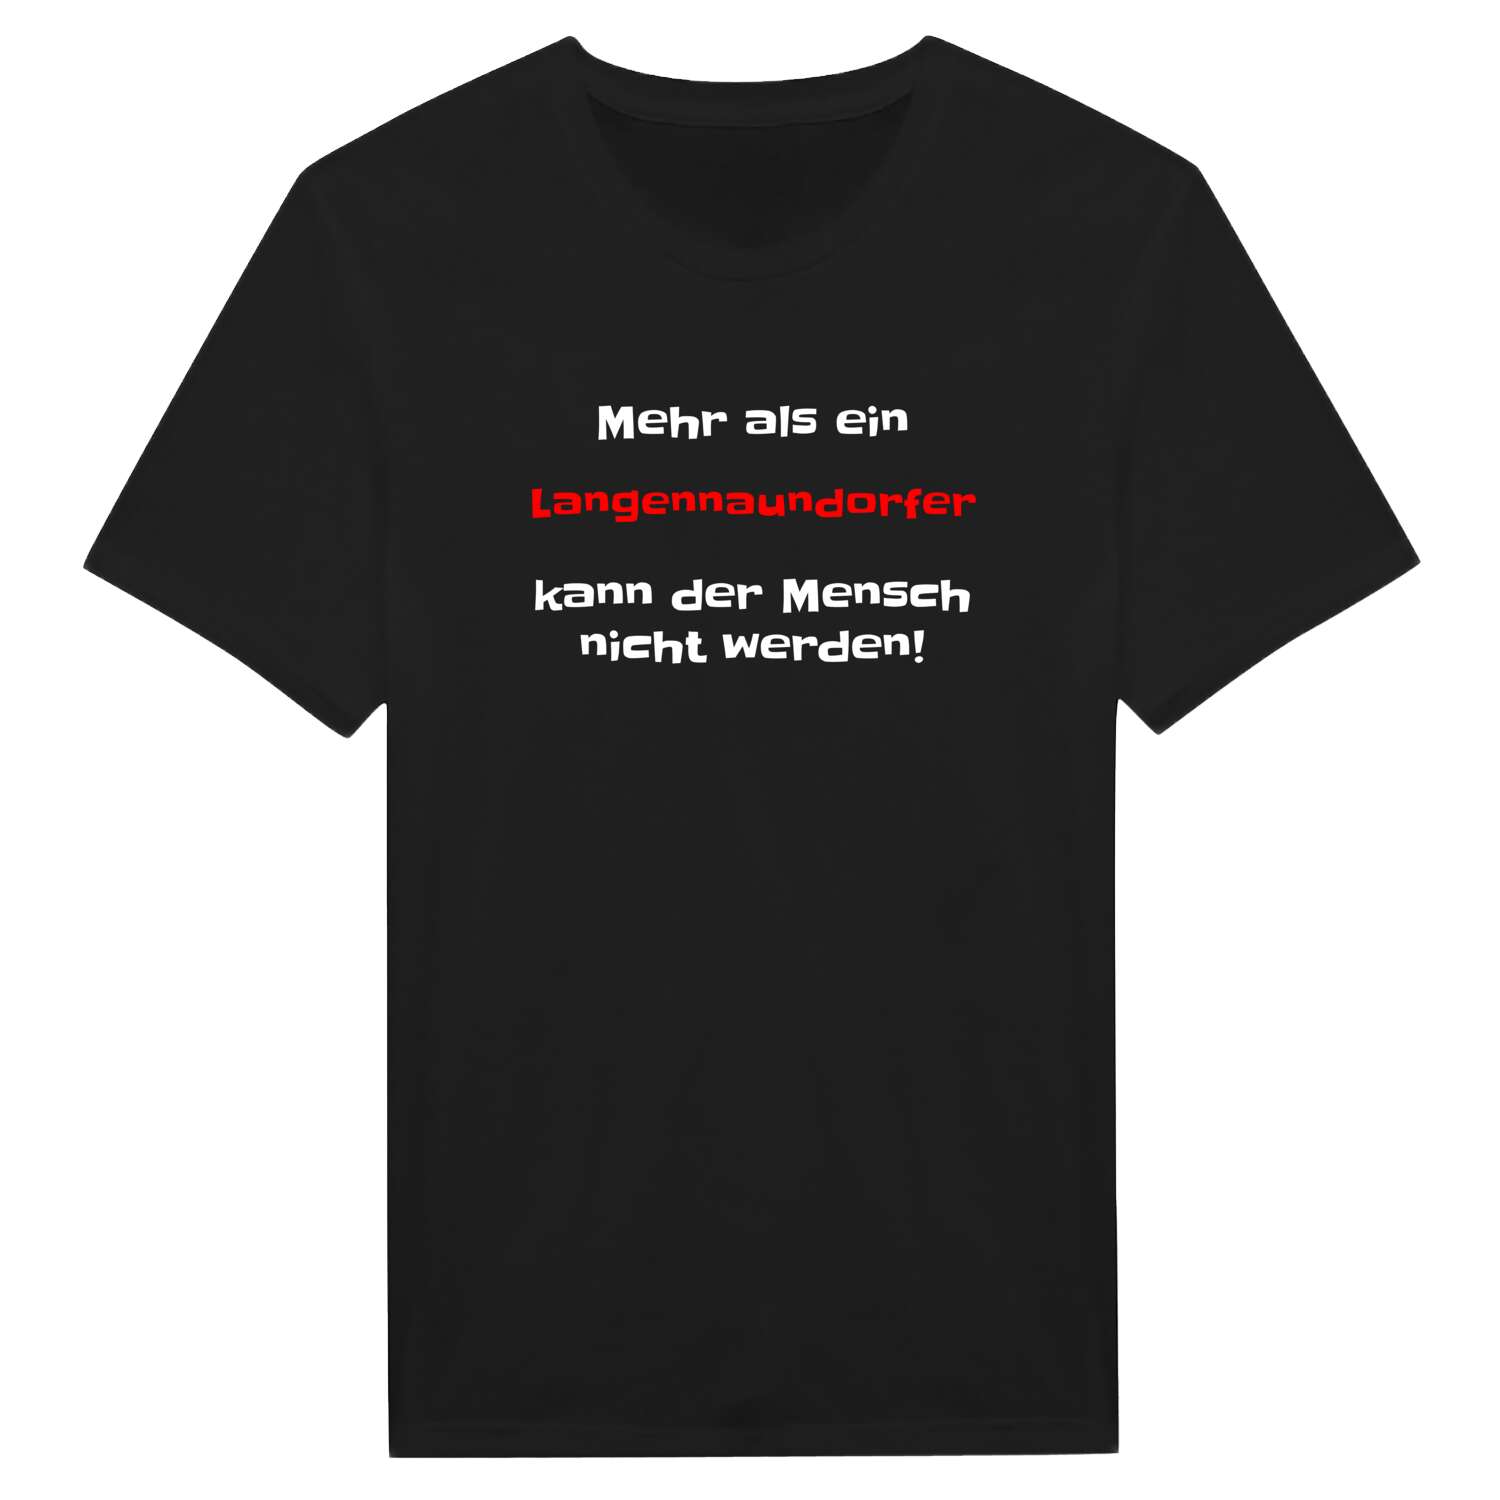 Langennaundorf T-Shirt »Mehr als ein«